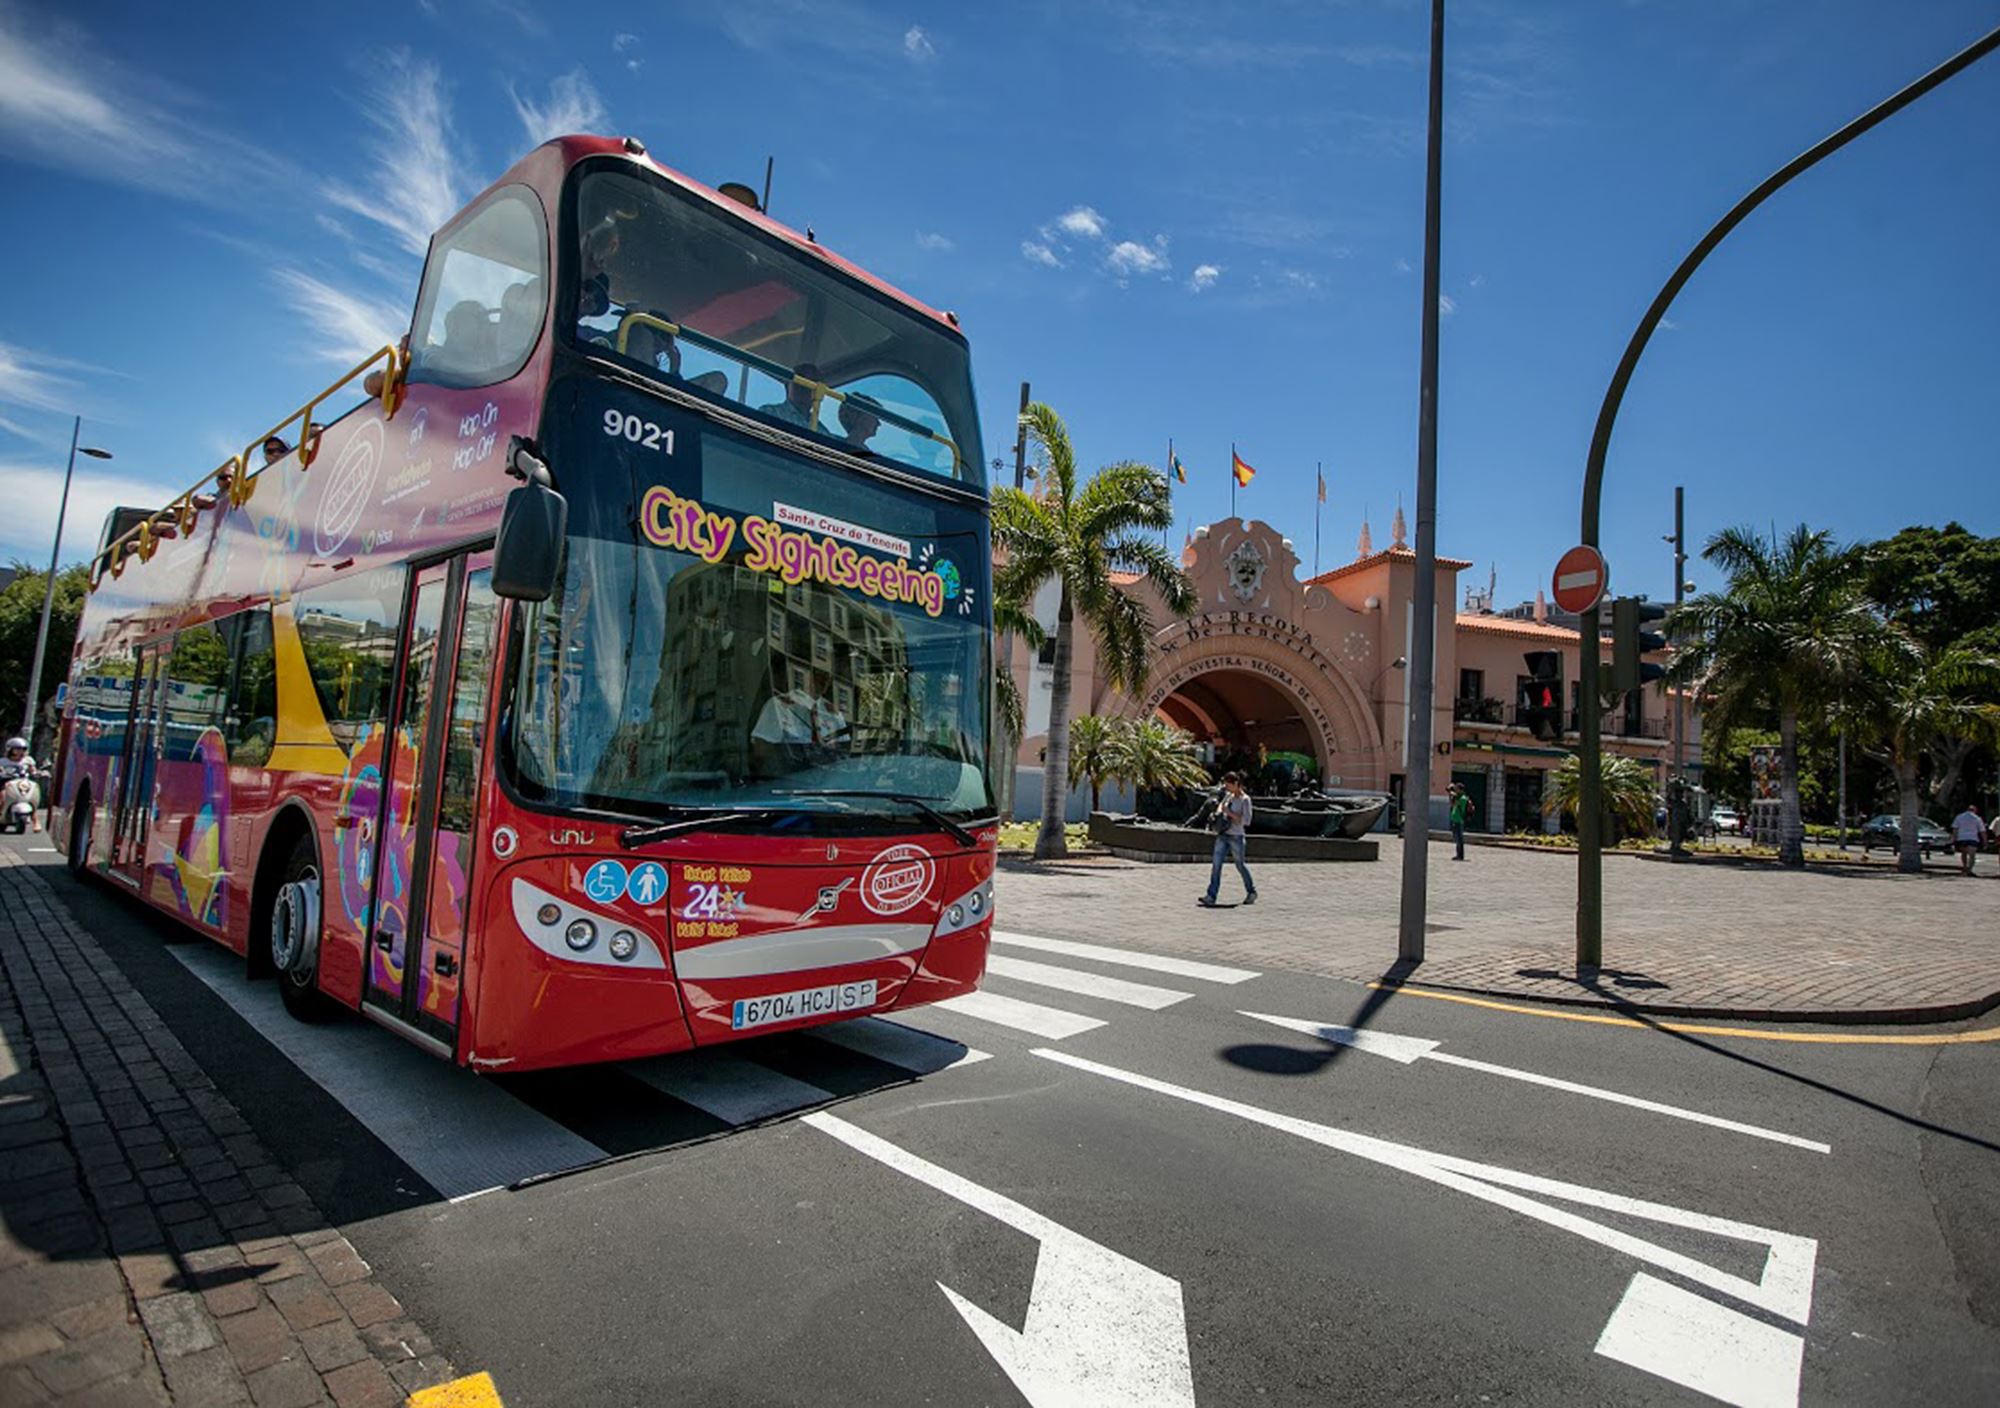 acheter réservations réserver visites guidées tours billets visiter Bus Touristique City Sightseeing Santa Cruz de Tenerife